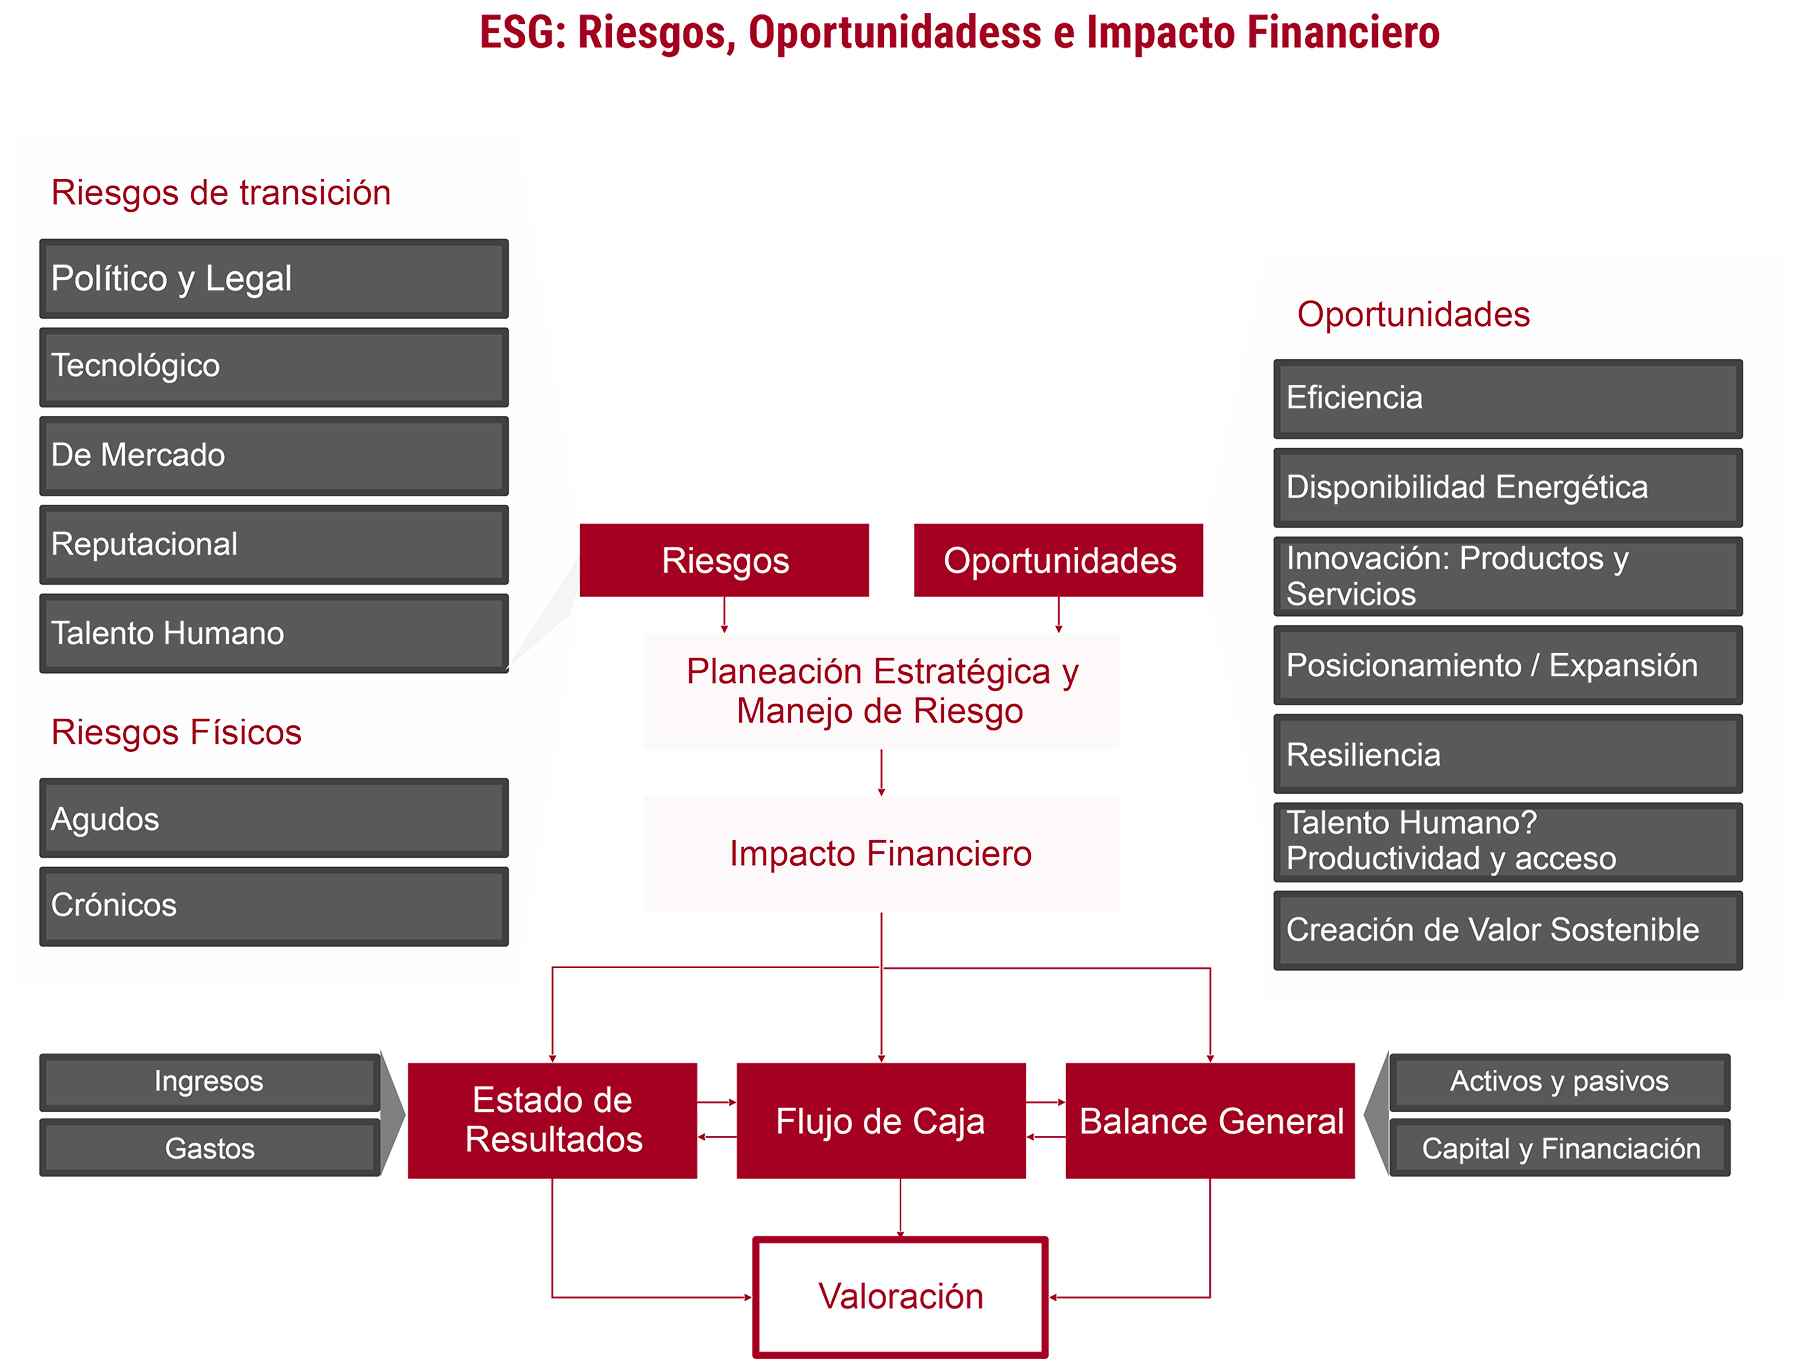 ESG Riesgos Oportunidades e Impacto Financiero